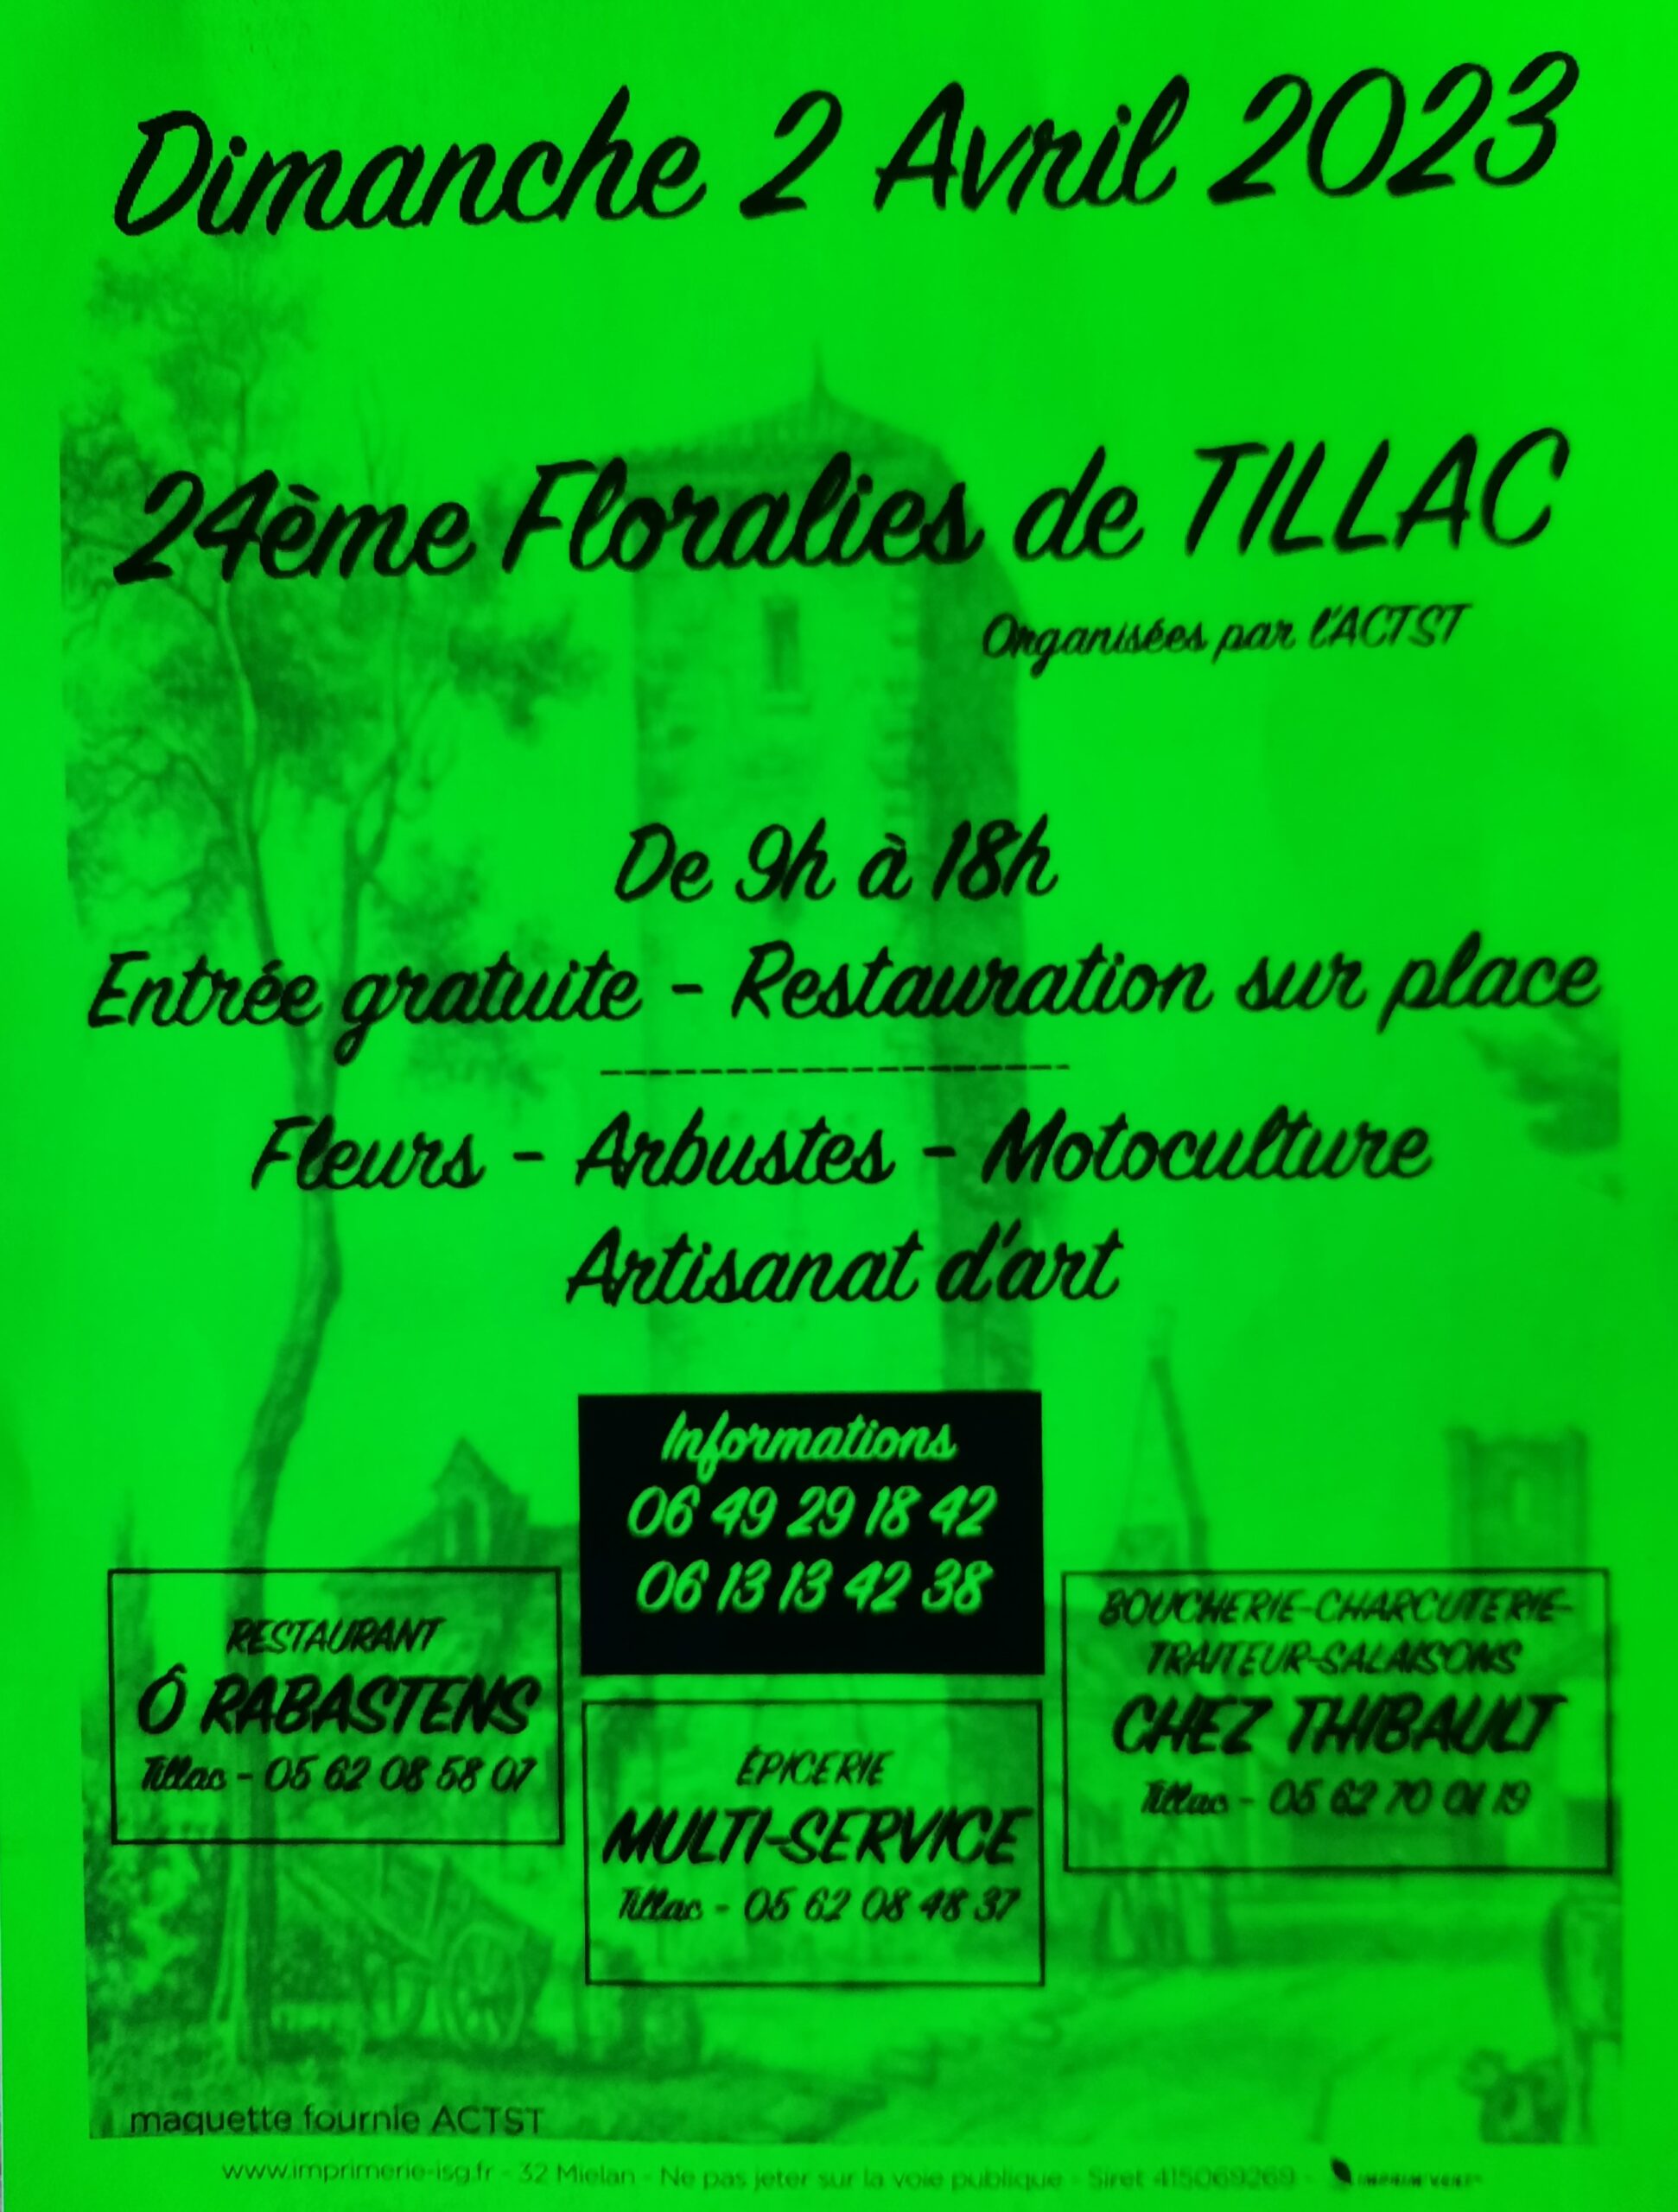 Floralies à Tillac le 2 avril 2023